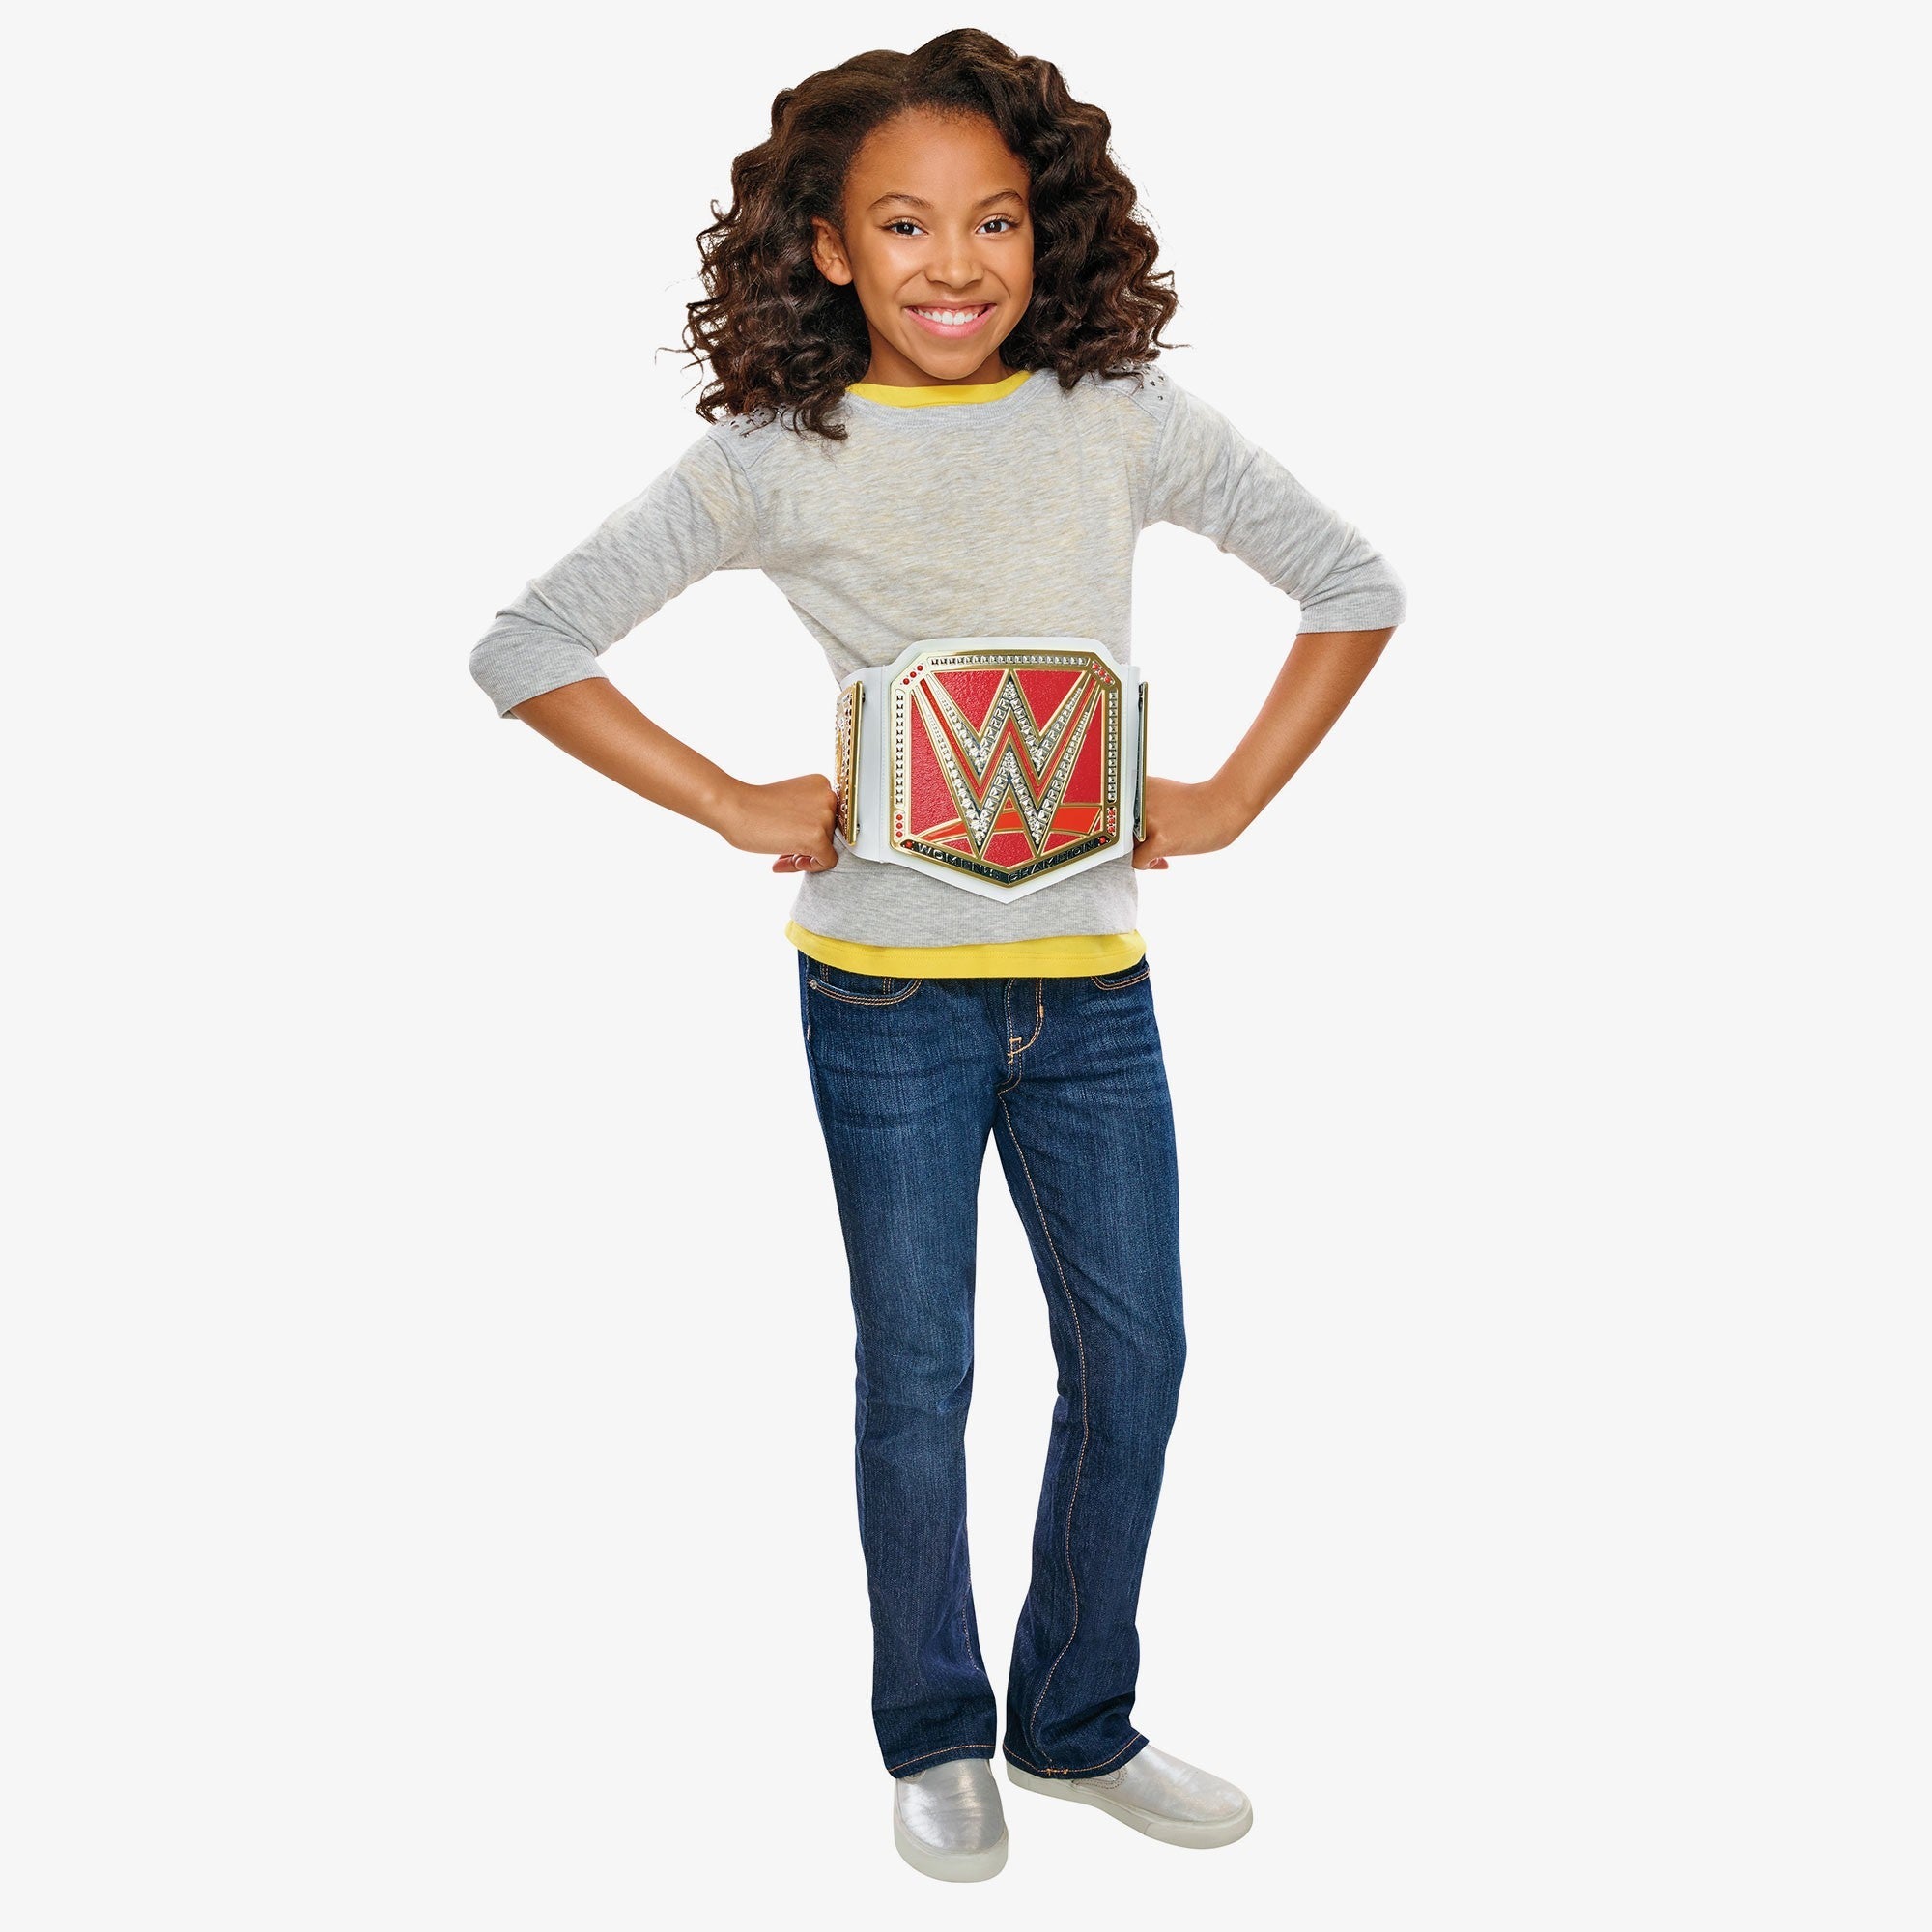 WWE RAW Women's Championship Belt – wrestlingshop.com